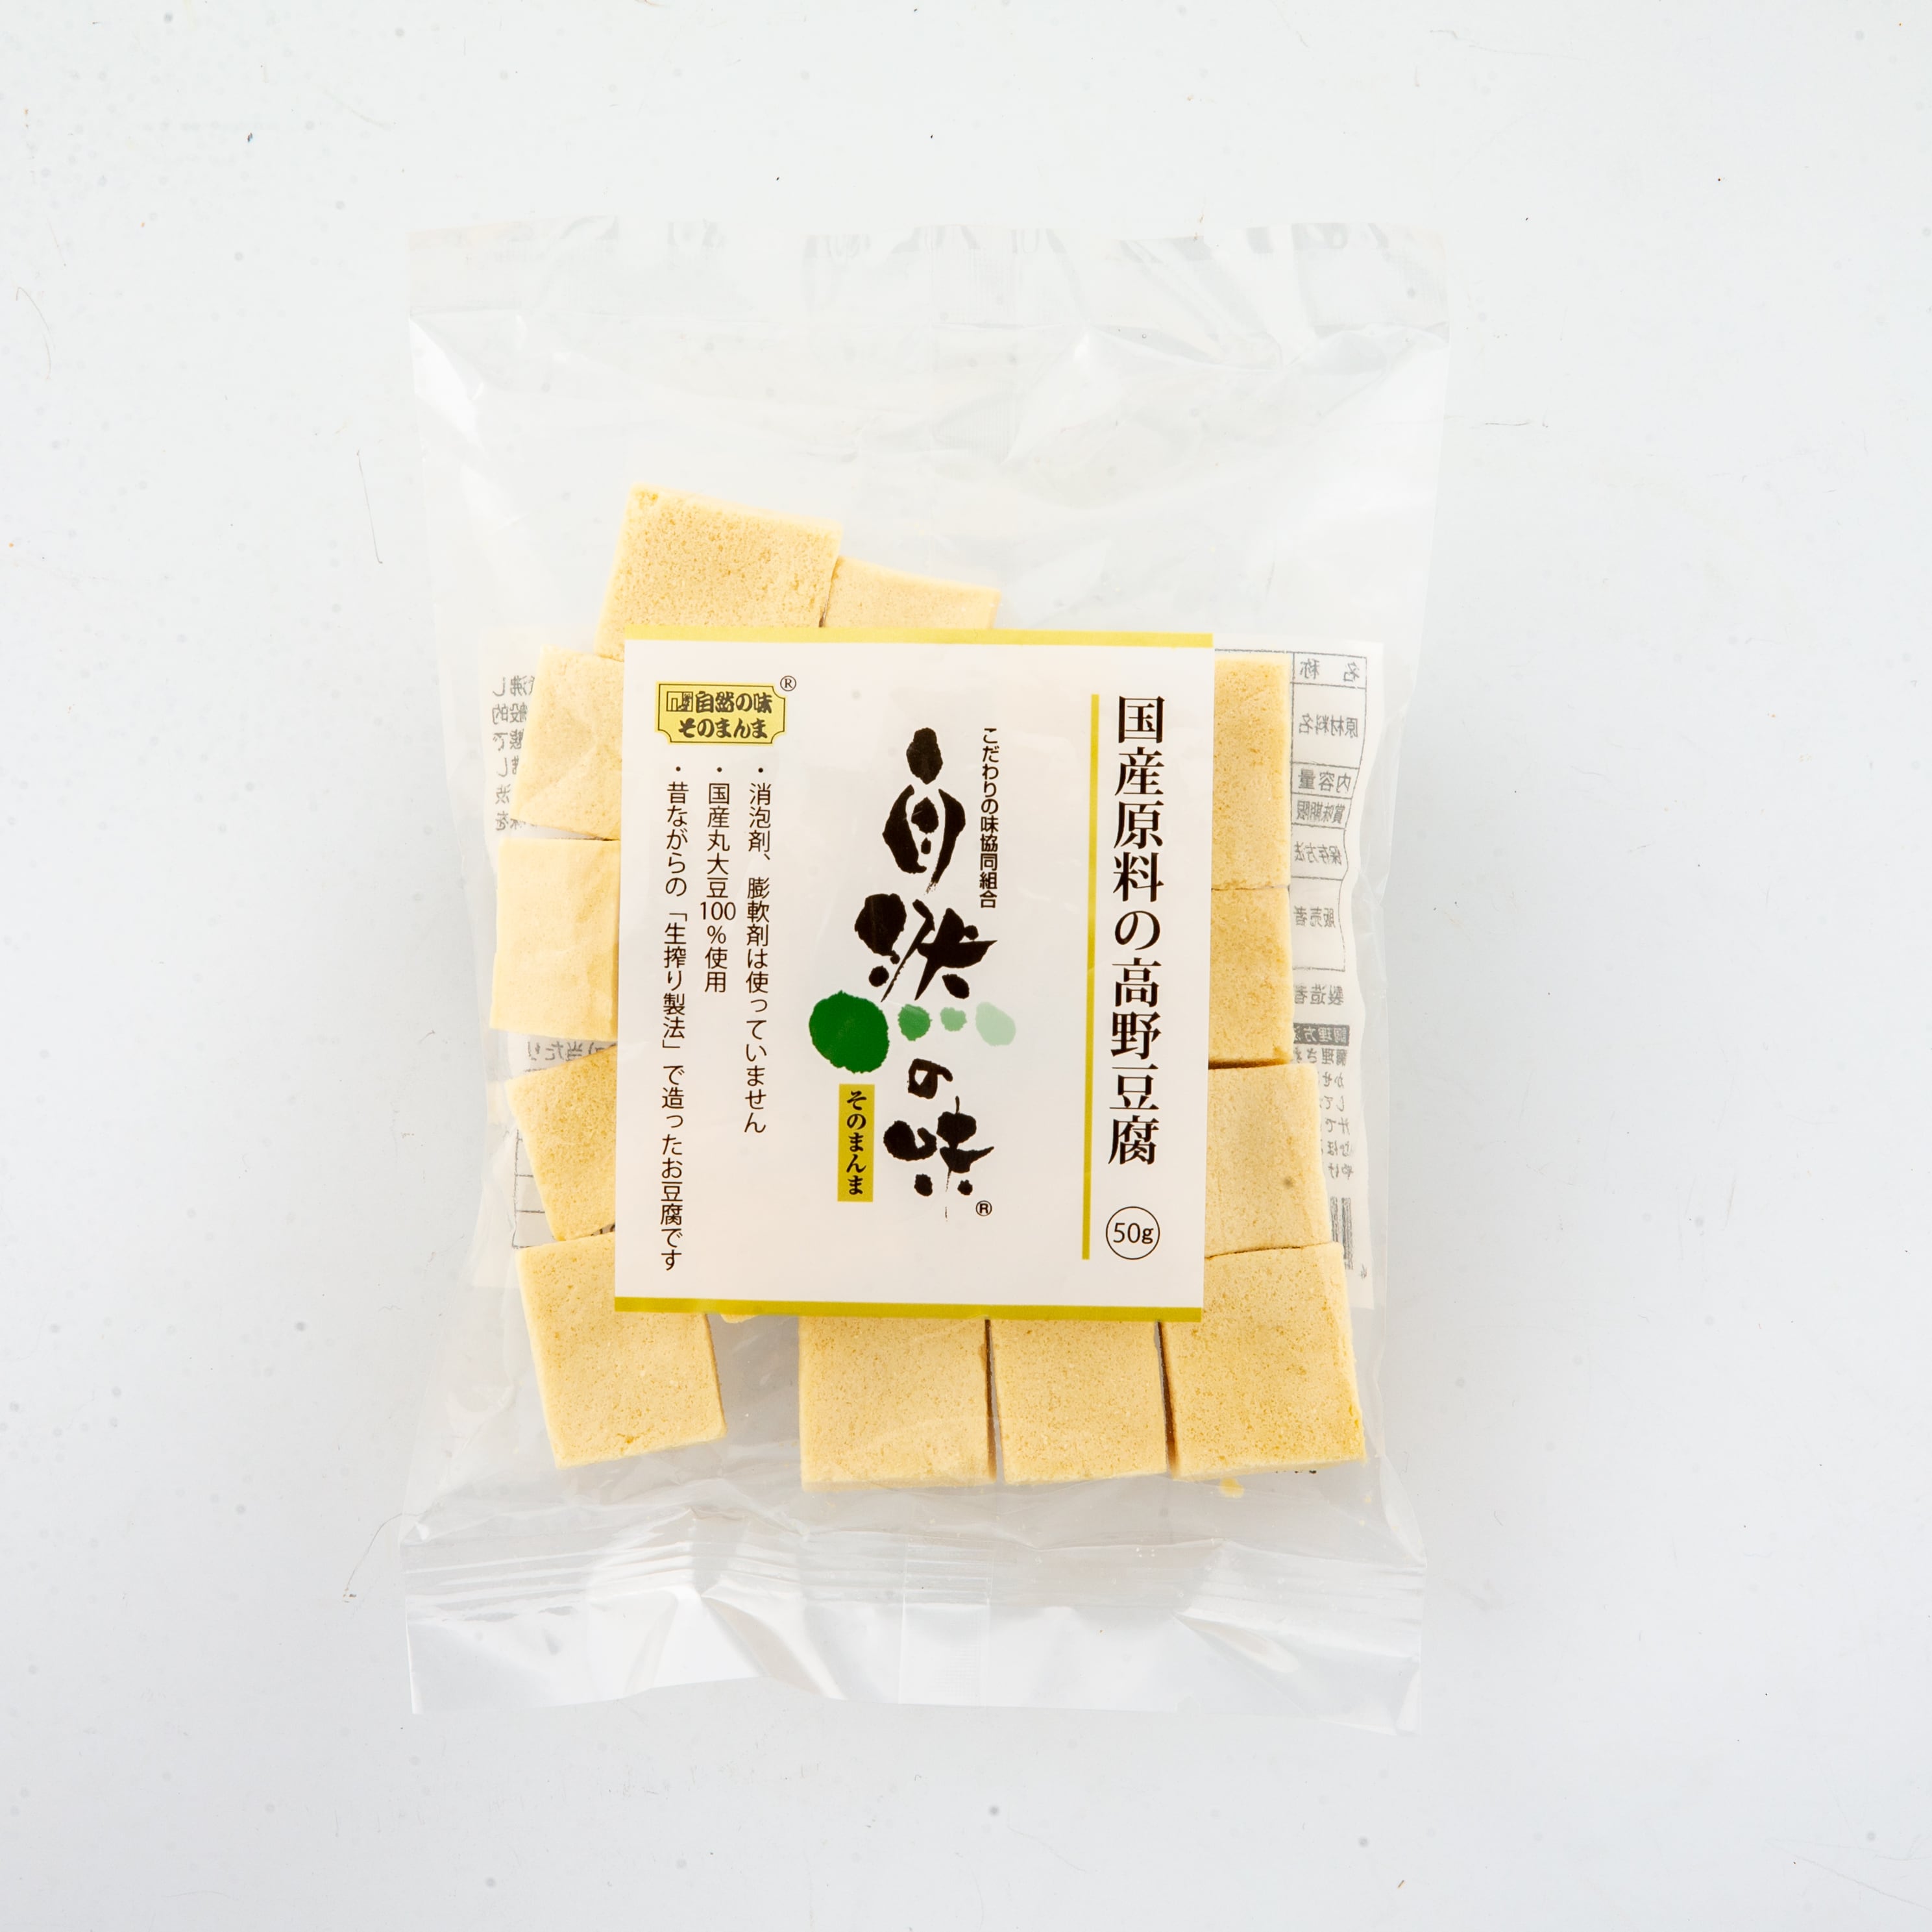 50g　熊本からからだにやさしい商品を発送　自然の味　公式オンラインショップ　国産原料の高野豆腐　フードプラザにしだ